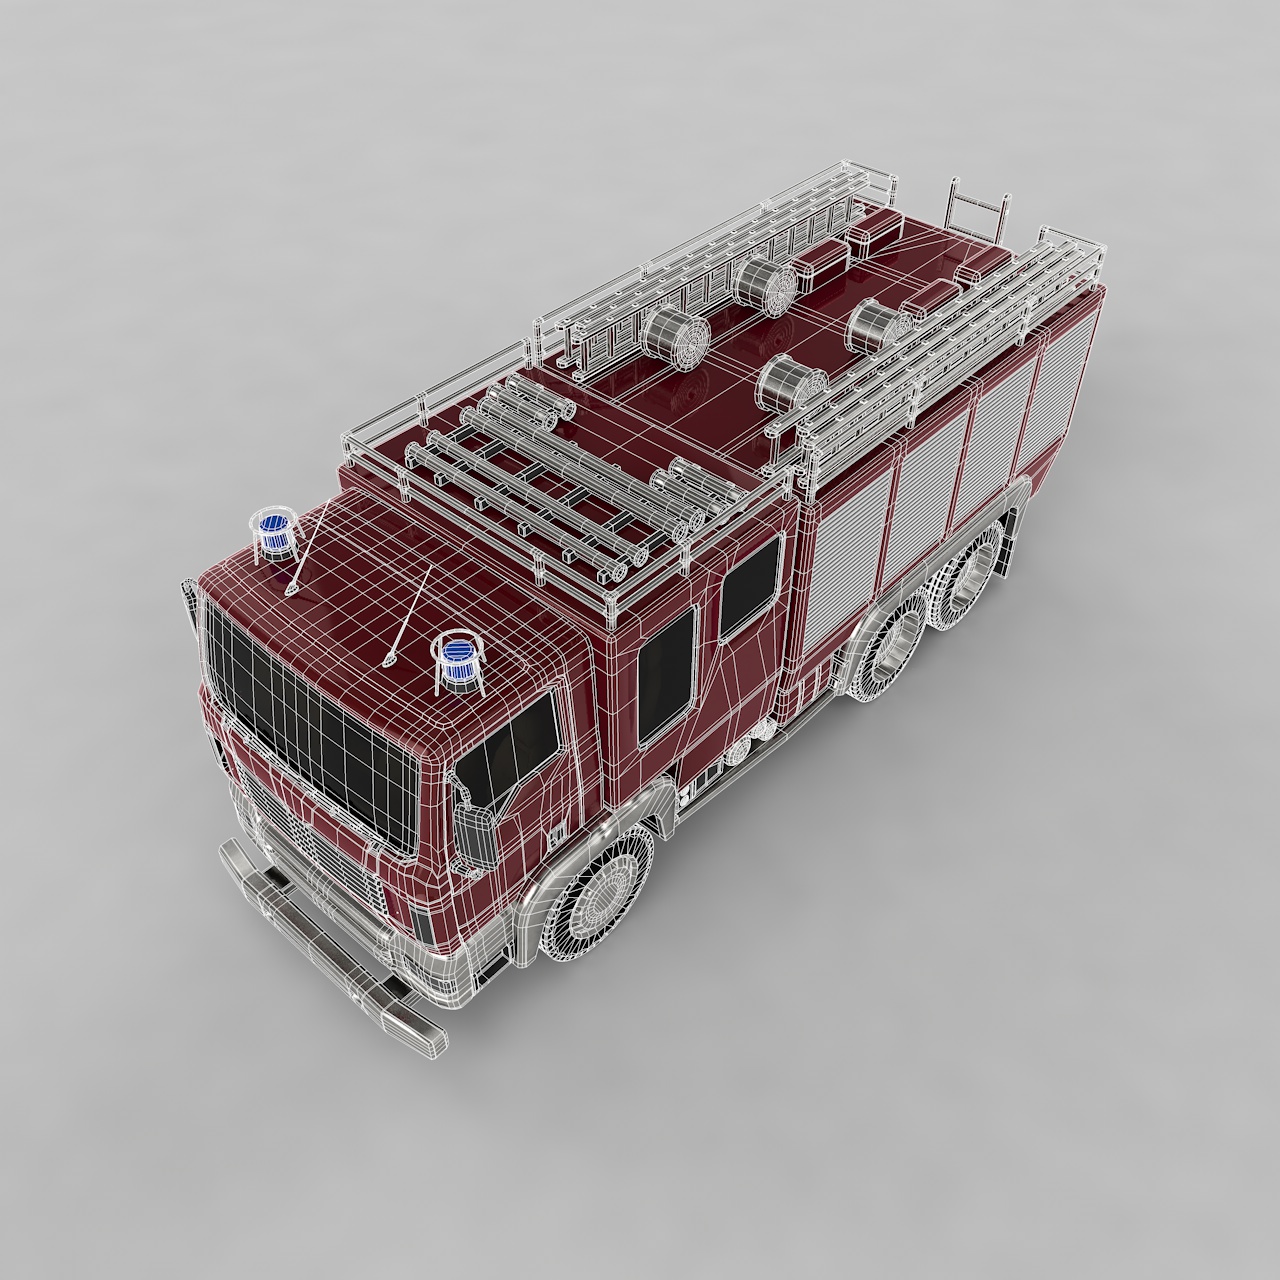 Firetruck 3d model